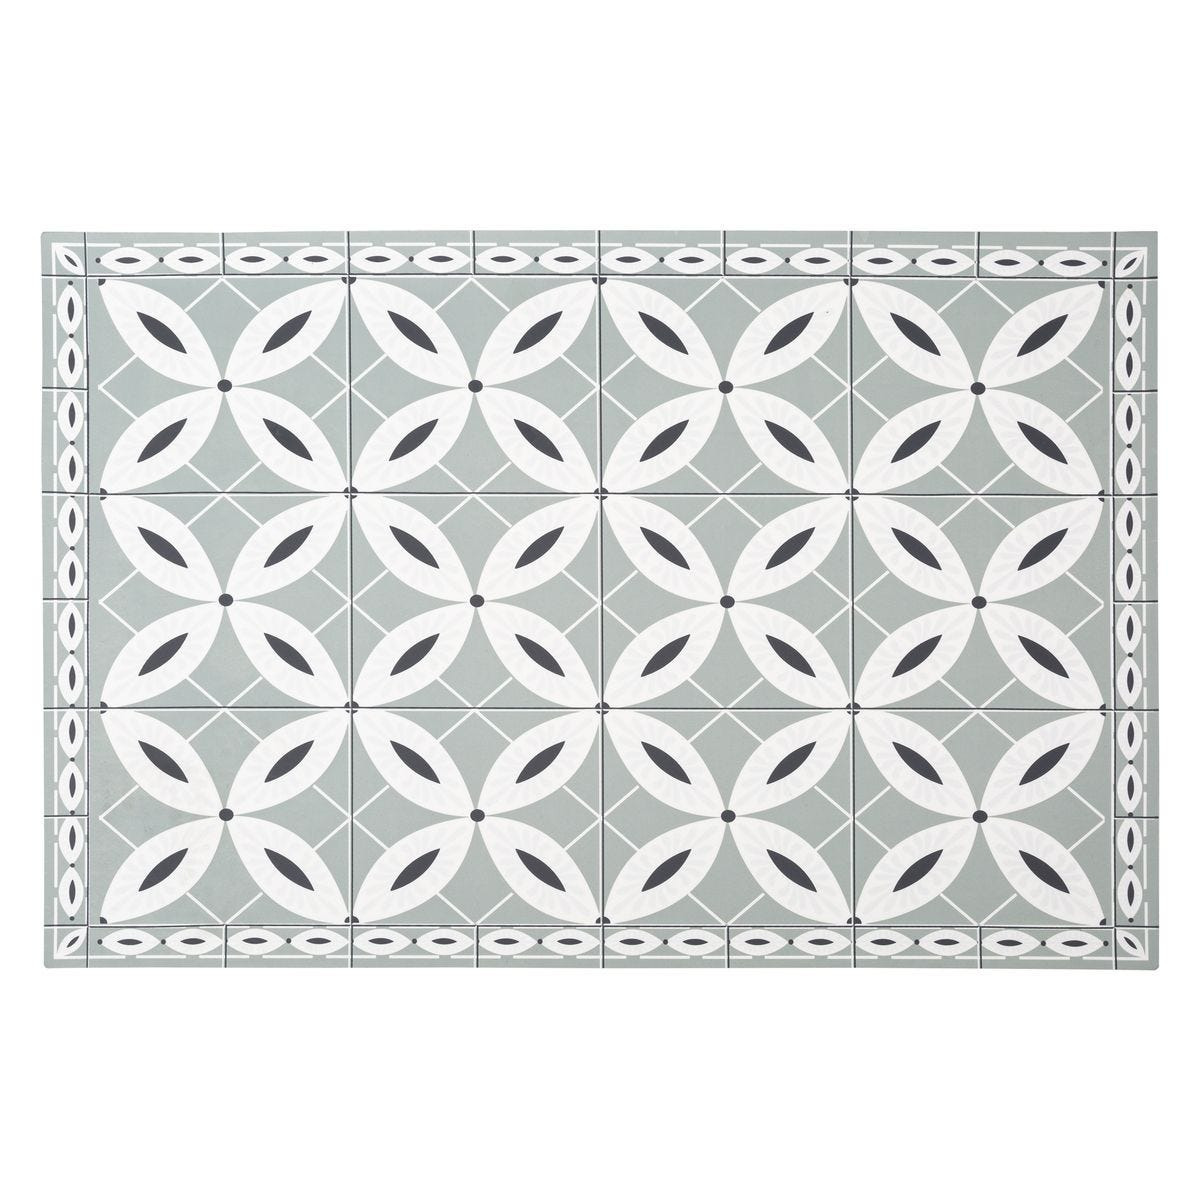 Rechthoekige placemat mozaiek grijs vinyl 45 x 30 cm